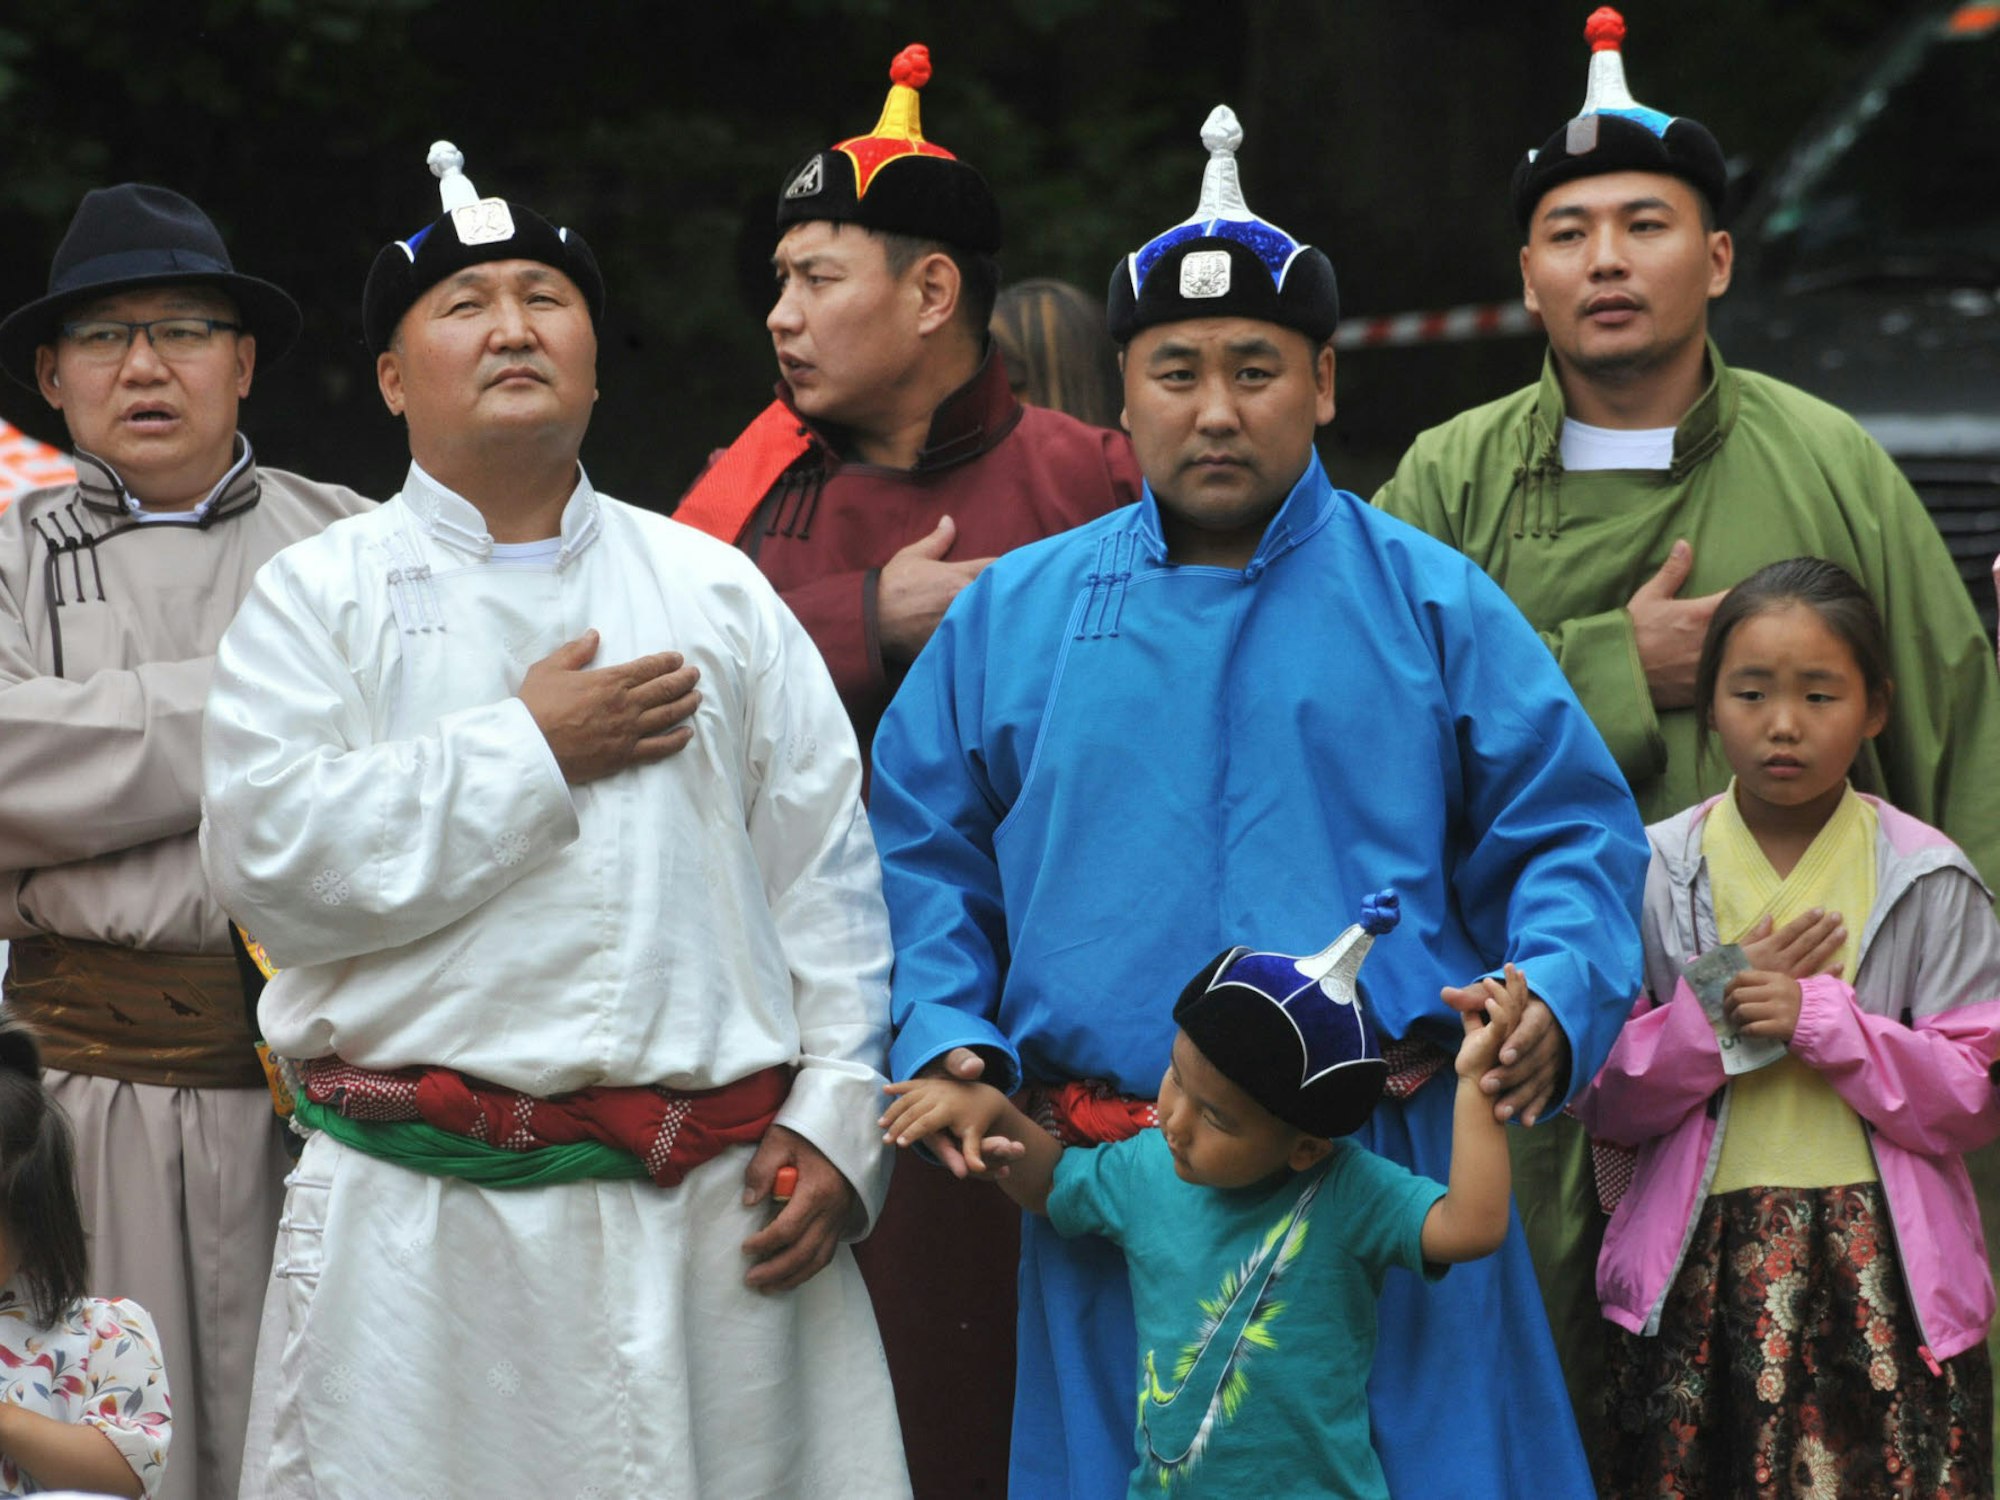 Hand aufs Herz: Als die mongolische Nationalhymne erklang, waren zahlreiche Besucher des Festes sichtlich ergriffen.